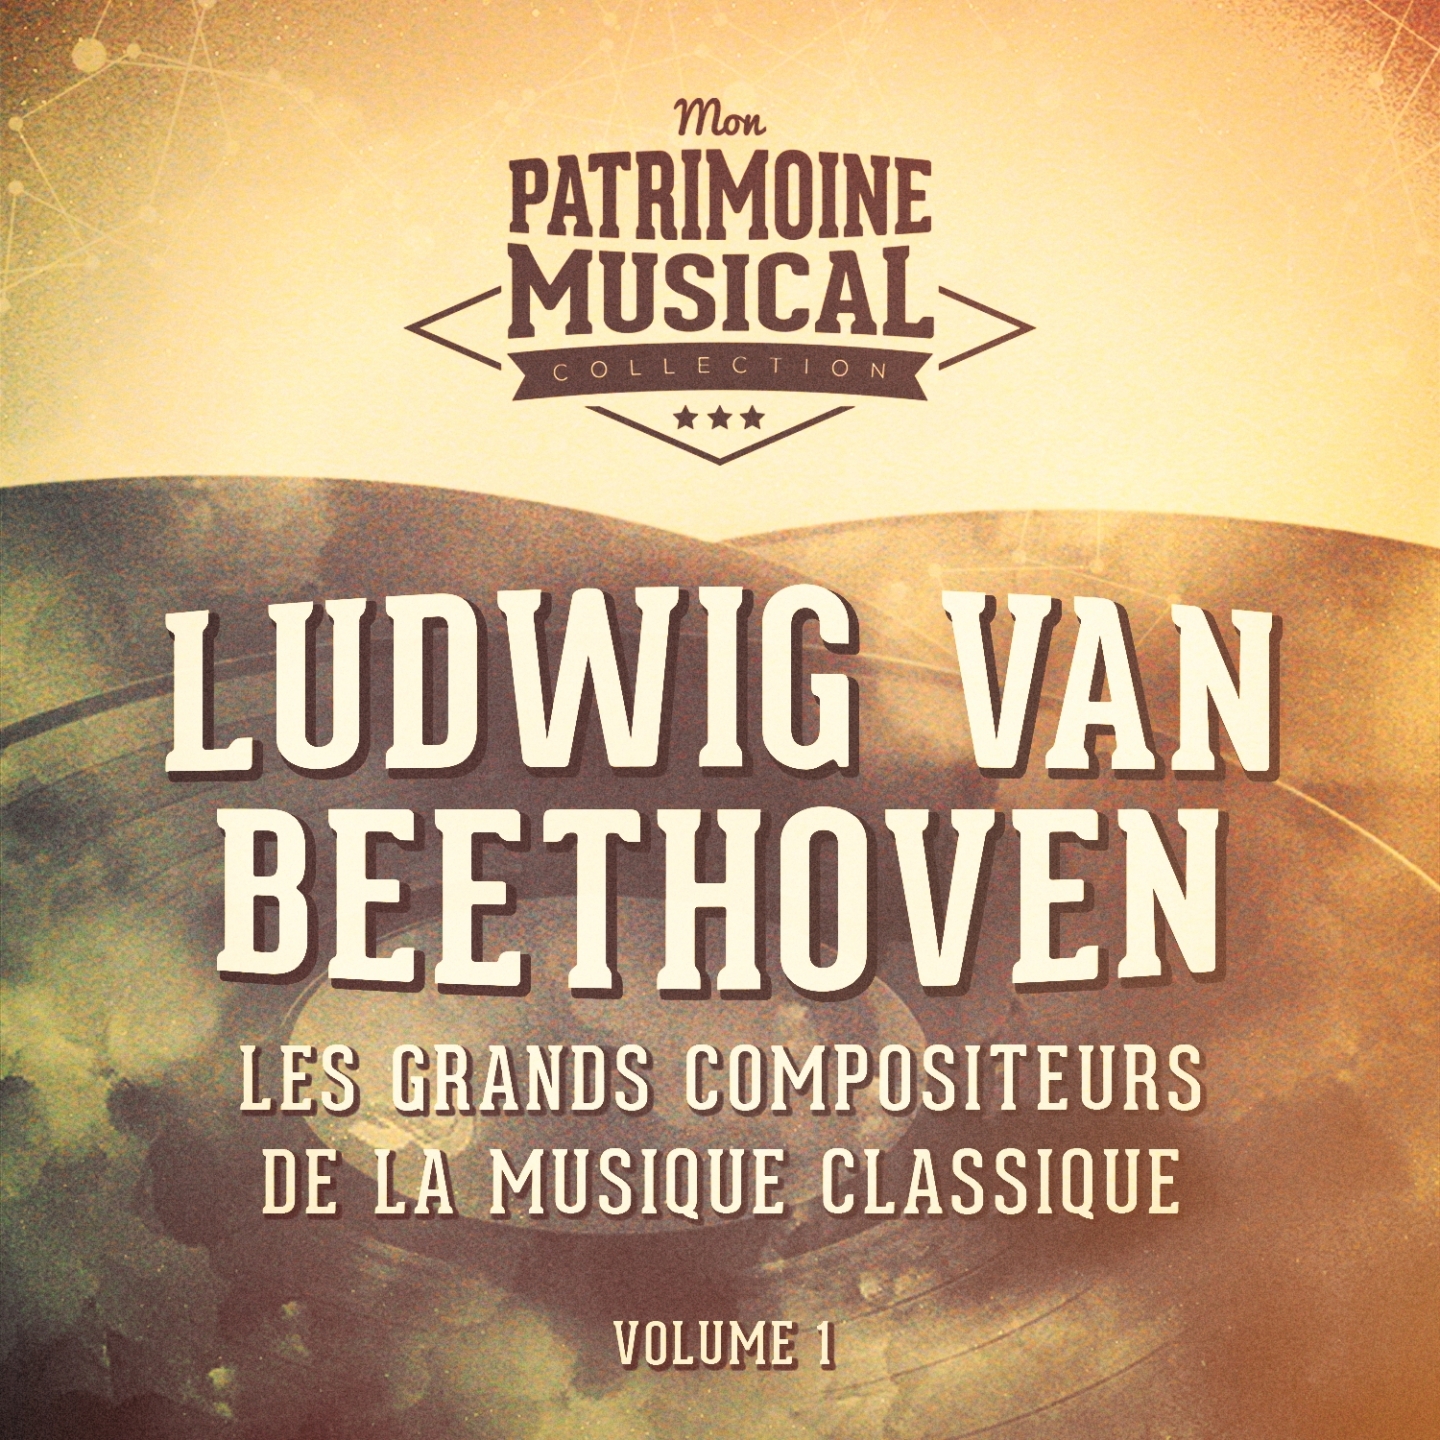 Les grands compositeurs de la musique classique : Ludwig van Beethoven, Vol. 1